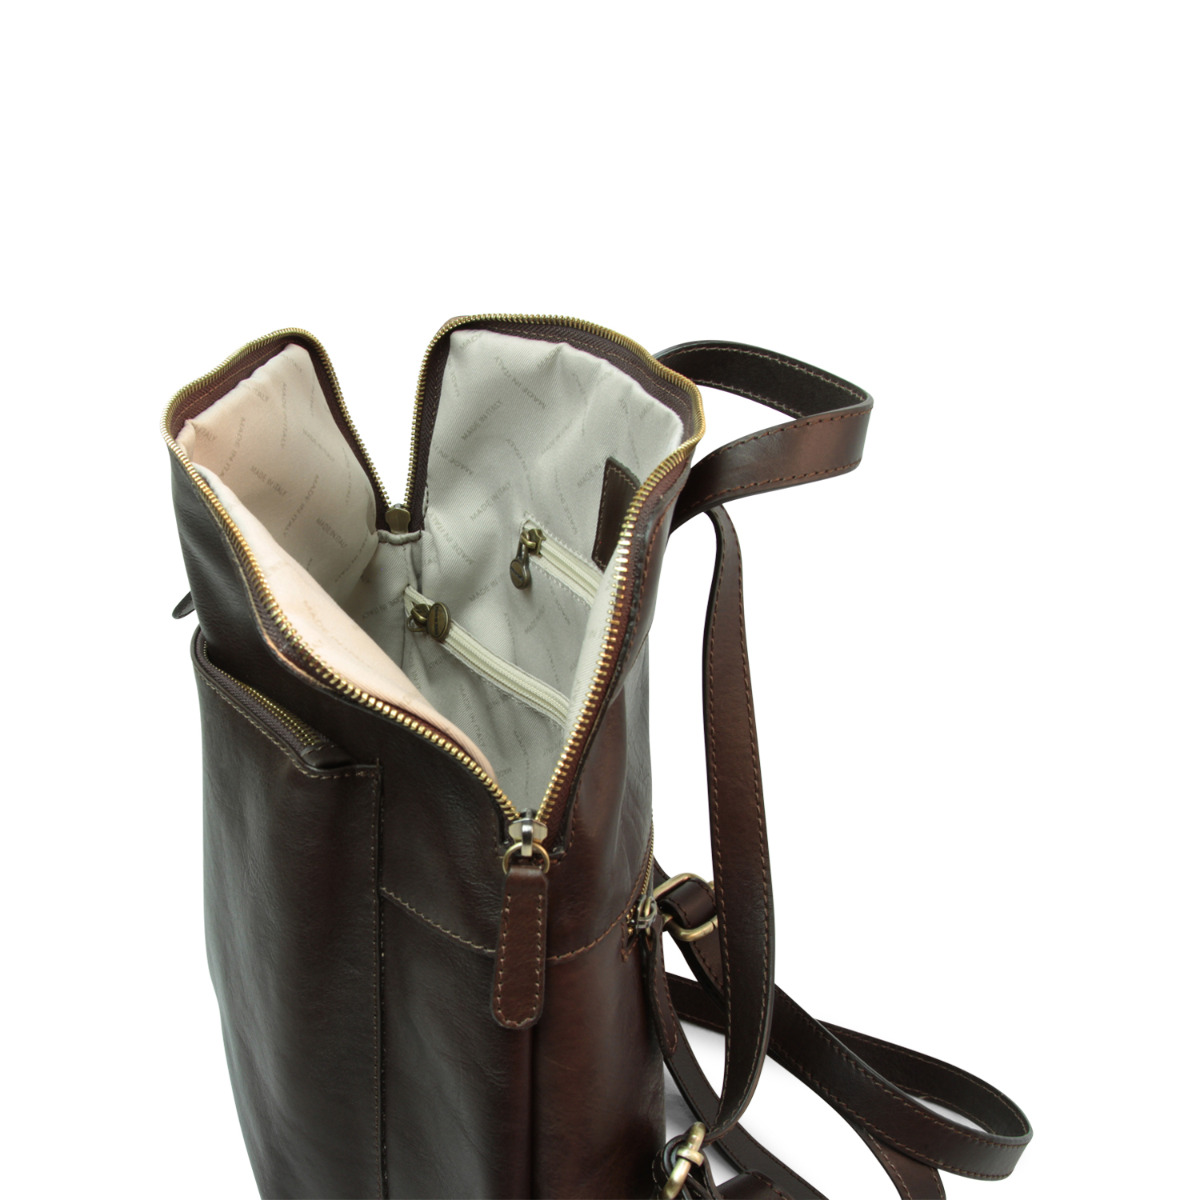 Full grain leather backpack - dark brown|415791TM|Old Angler Firenze